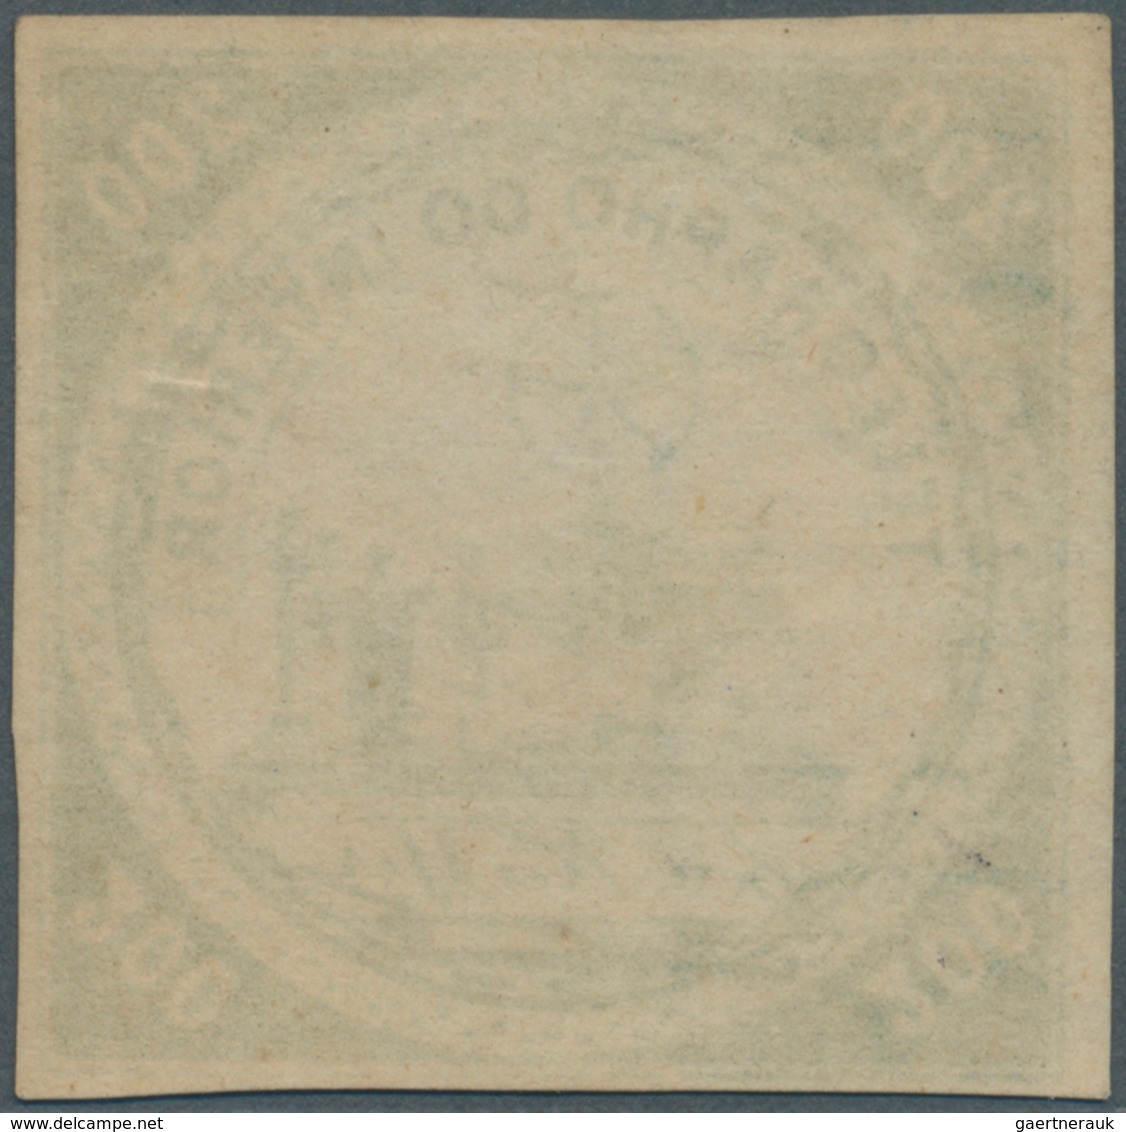 Brasilien - Telegrafenmarken: 1873, 200r. Yellow-green, Wm "Lacroix Freres", Fresh Colour, Full Marg - Telegraphenmarken